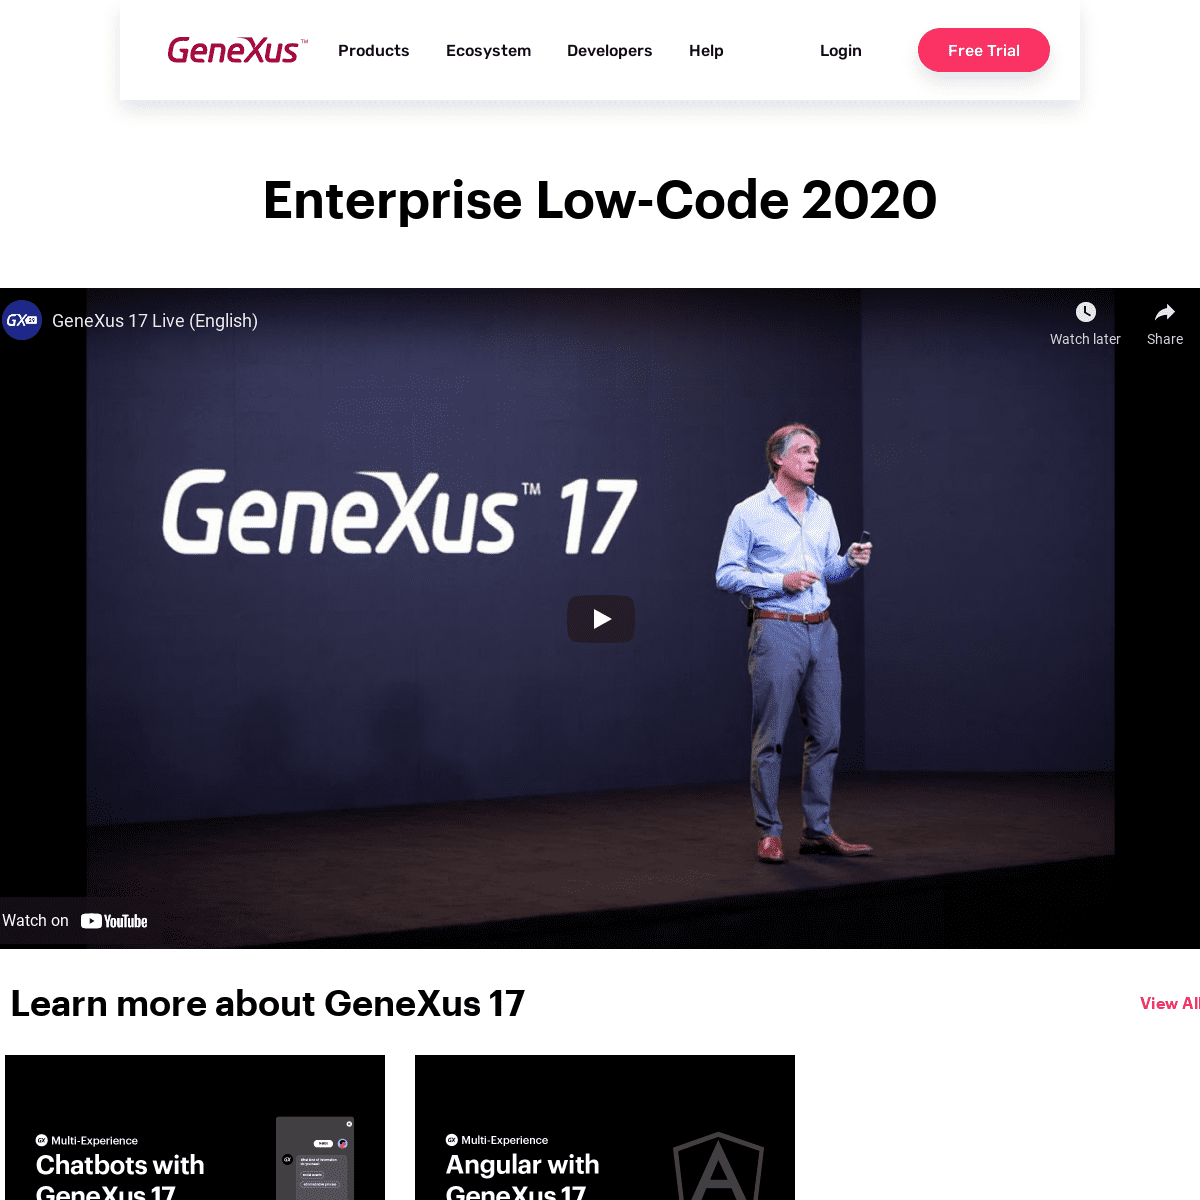 A complete backup of https://genexus.com